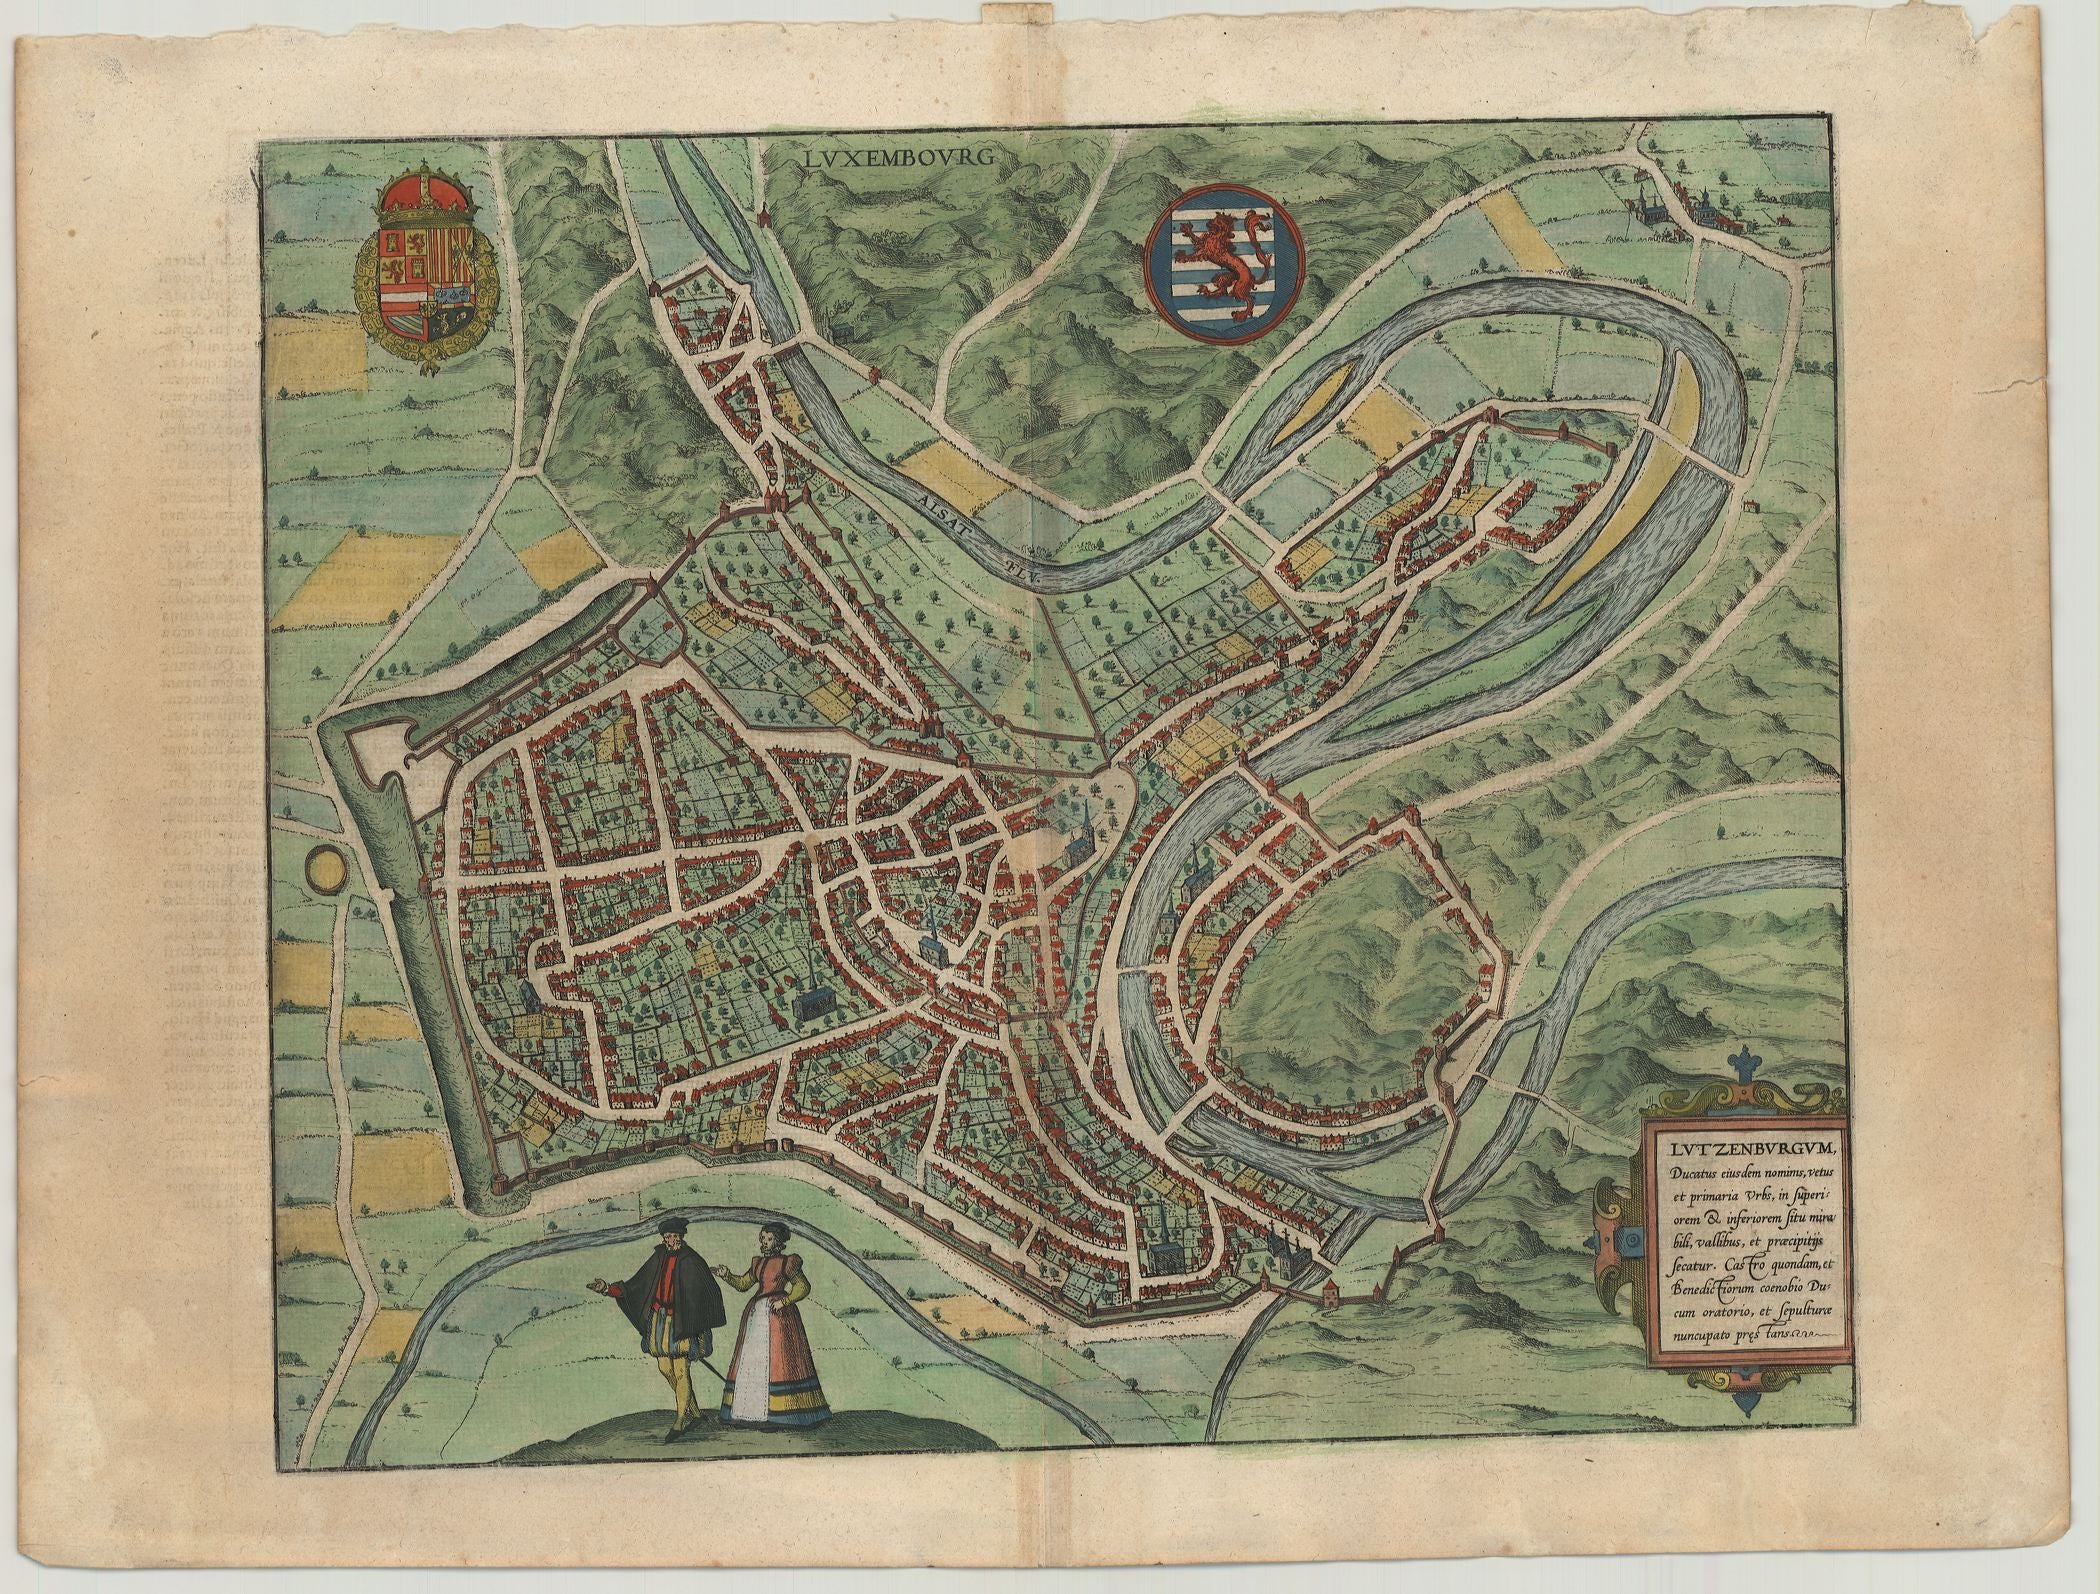 R3407  Braun & Hogenberg: Luxembourg - Lutzenburgum, Ducatus eiusdem Nominis, Vetus et Primaria Urbs 1581